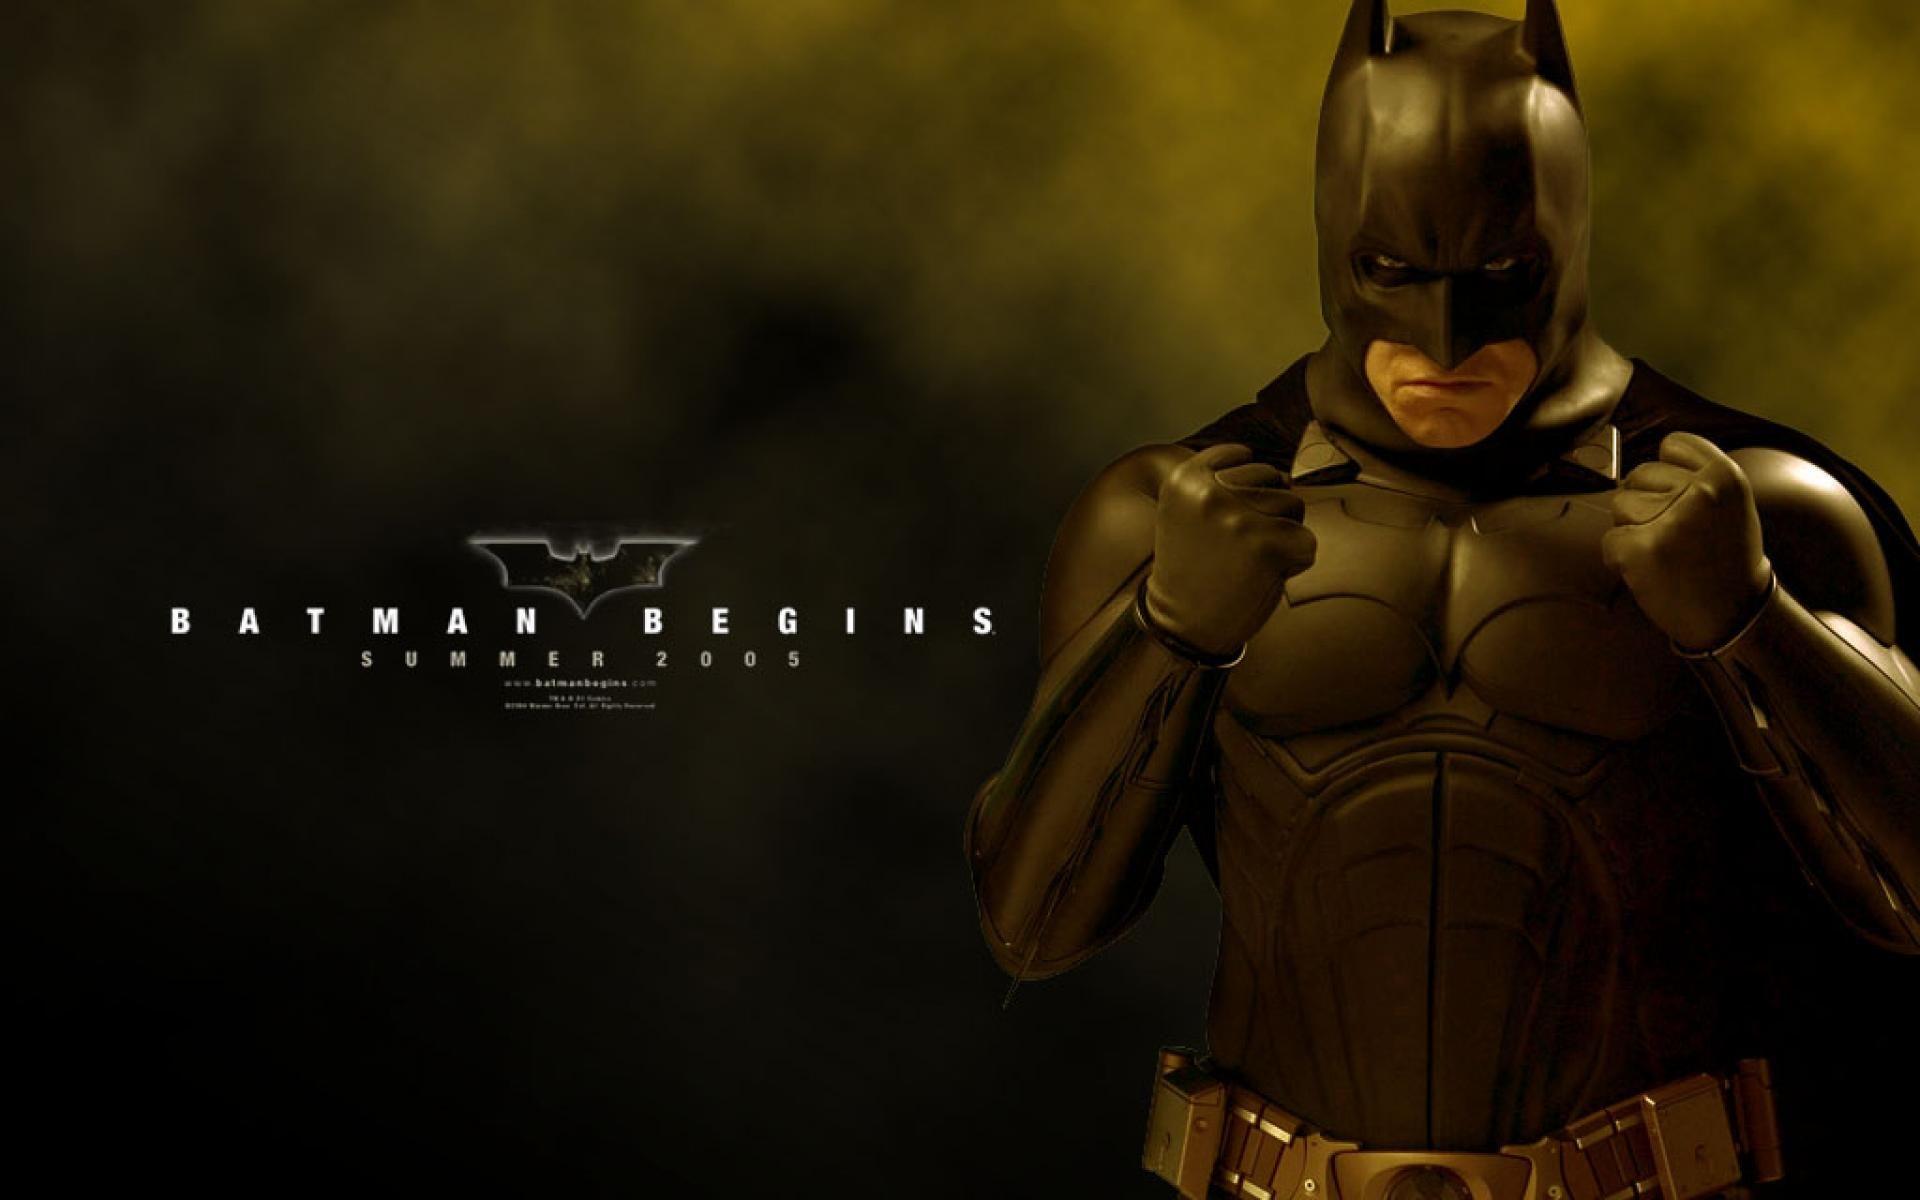 Batman начало. Бэтмен начало 2005. Бэтмен тёмный рыцарь 2005. Batman begins 2005 poster.